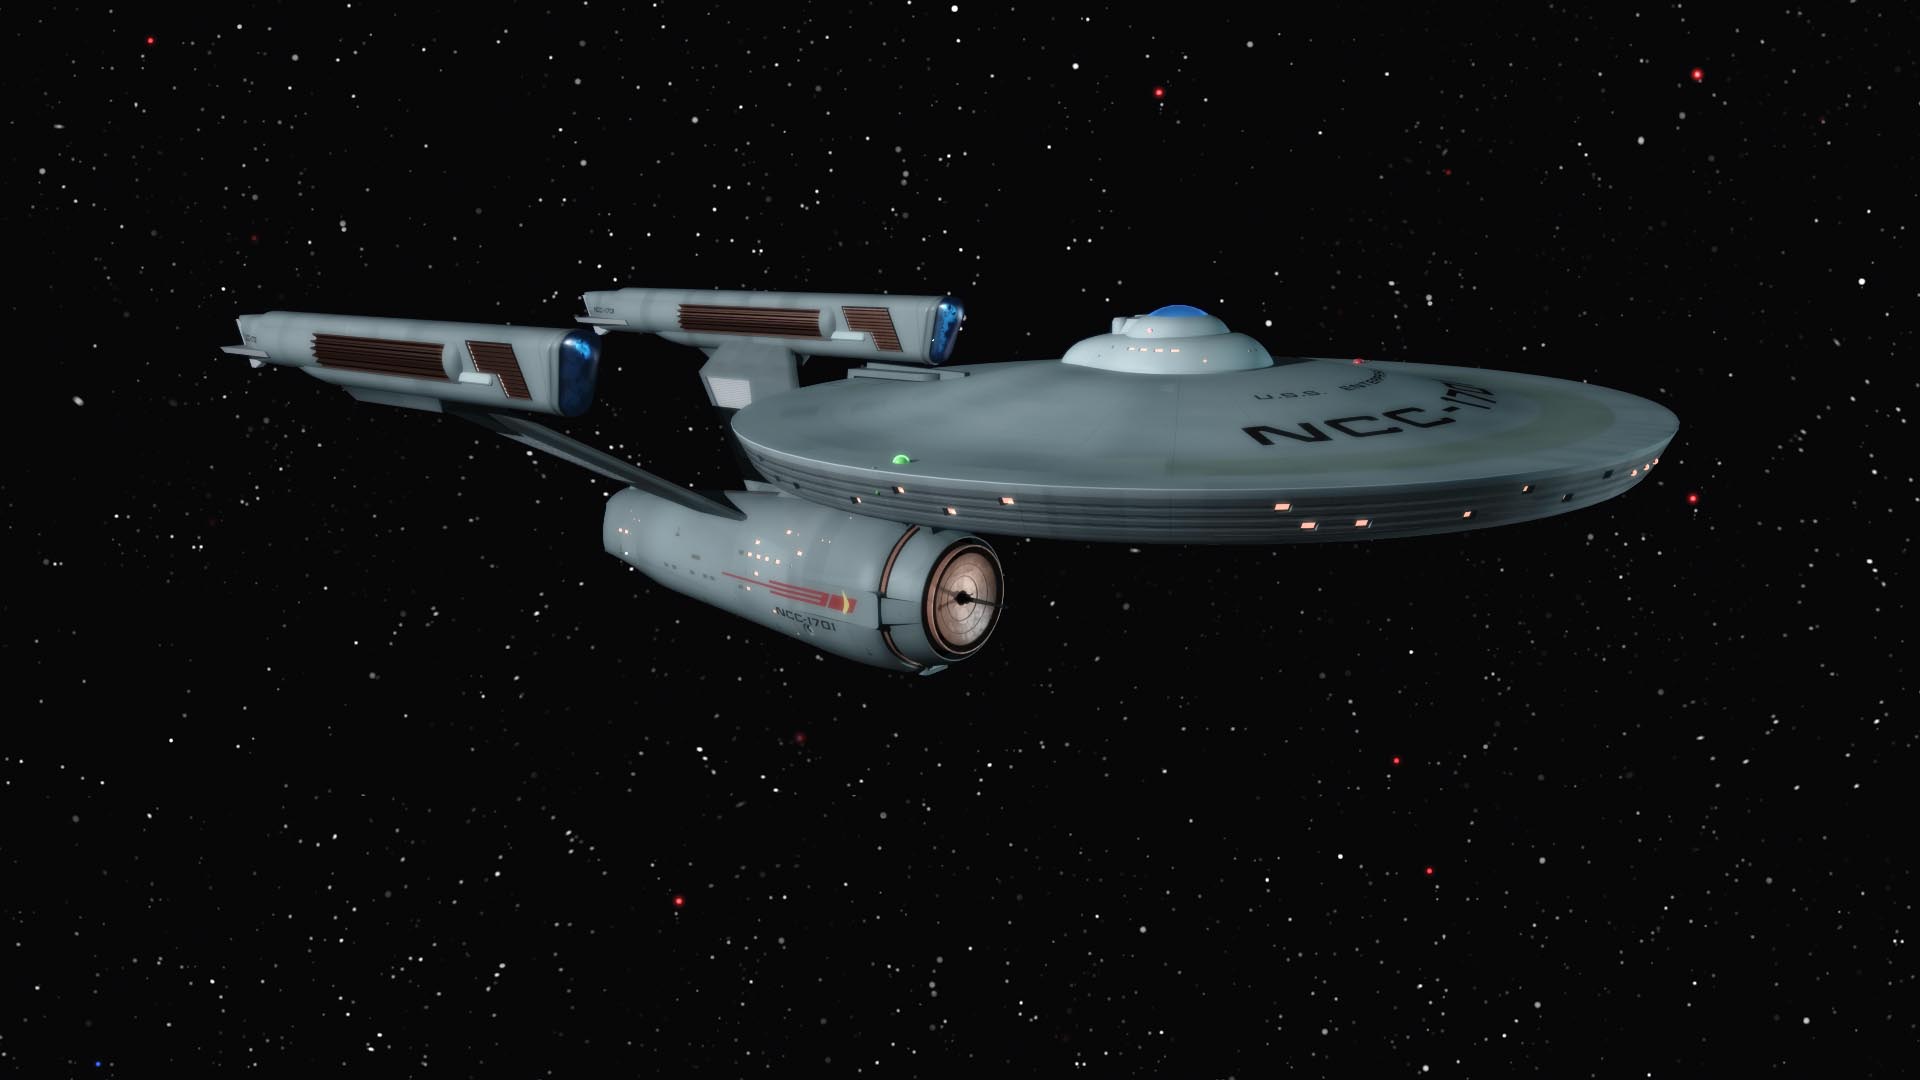 Light Texture Star Trek Xis Uss Enterprise Wallpaper 1280x1024 px